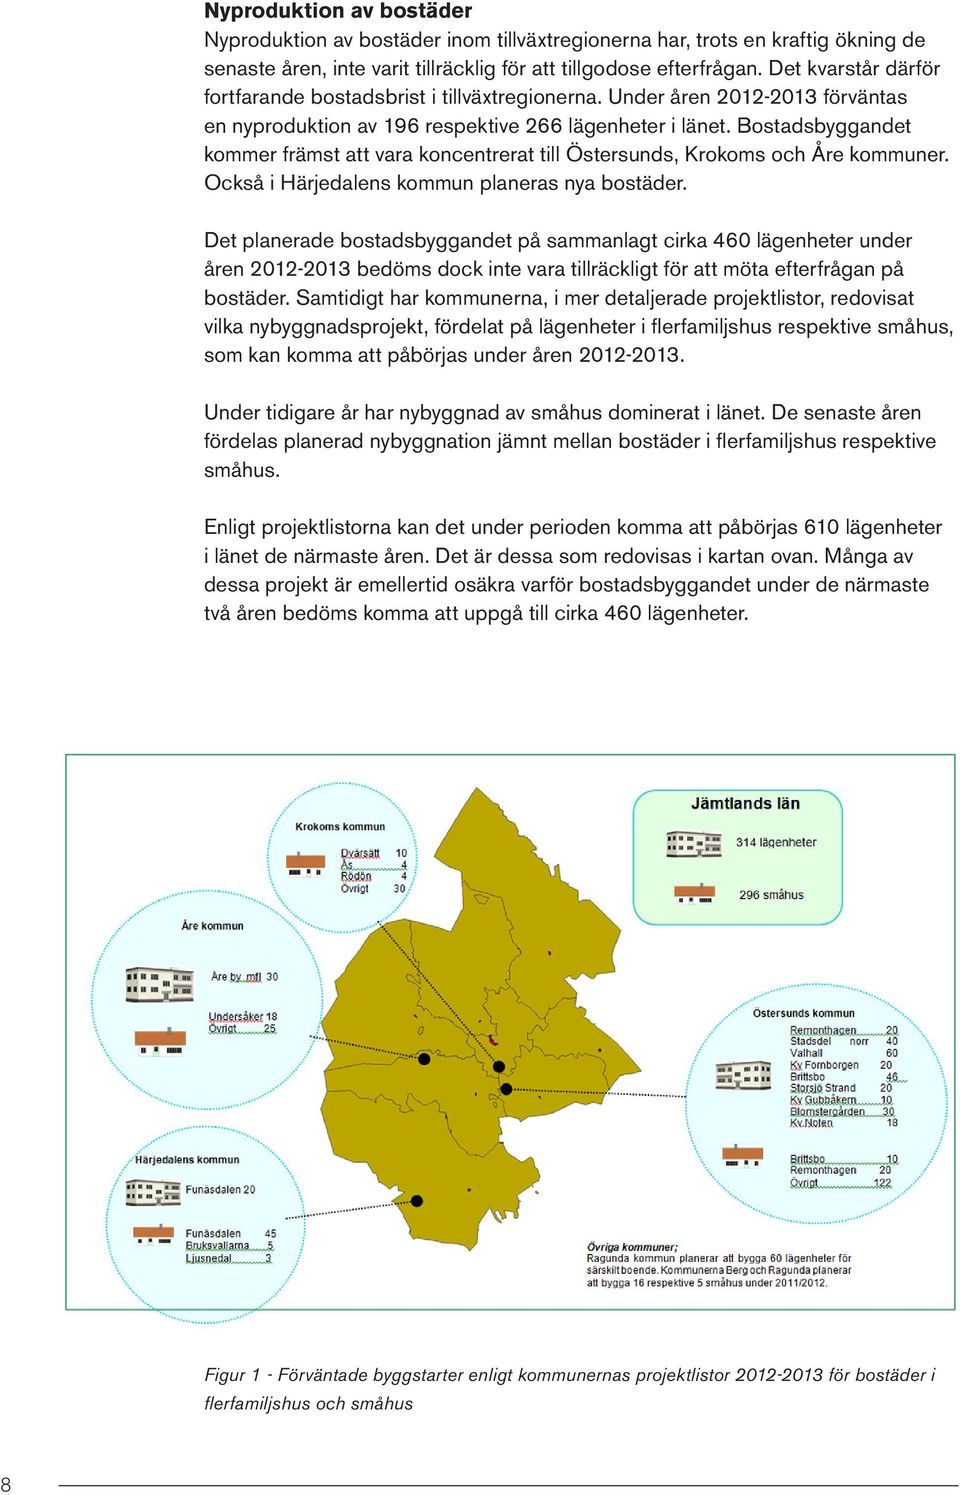 Bostadsbyggandet kommer främst att vara koncentrerat till Östersunds, Krokoms och Åre kommuner. Också i Härjedalens kommun planeras nya bostäder.